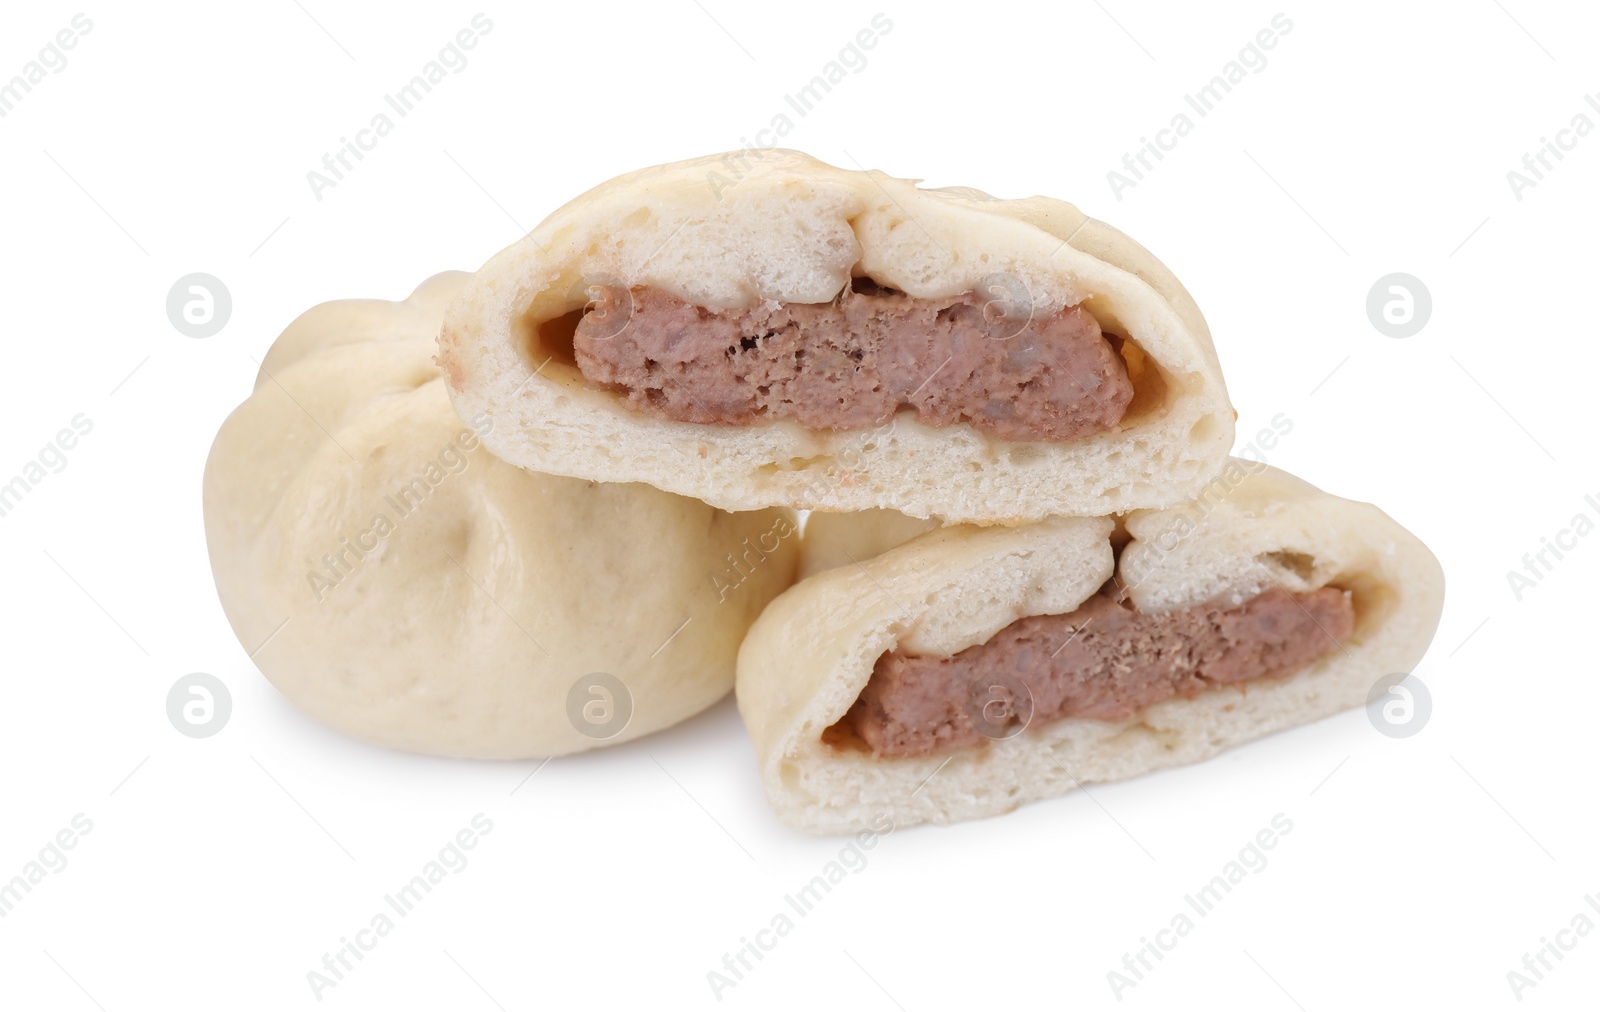 Photo of Delicious bao buns (baozi) isolated on white